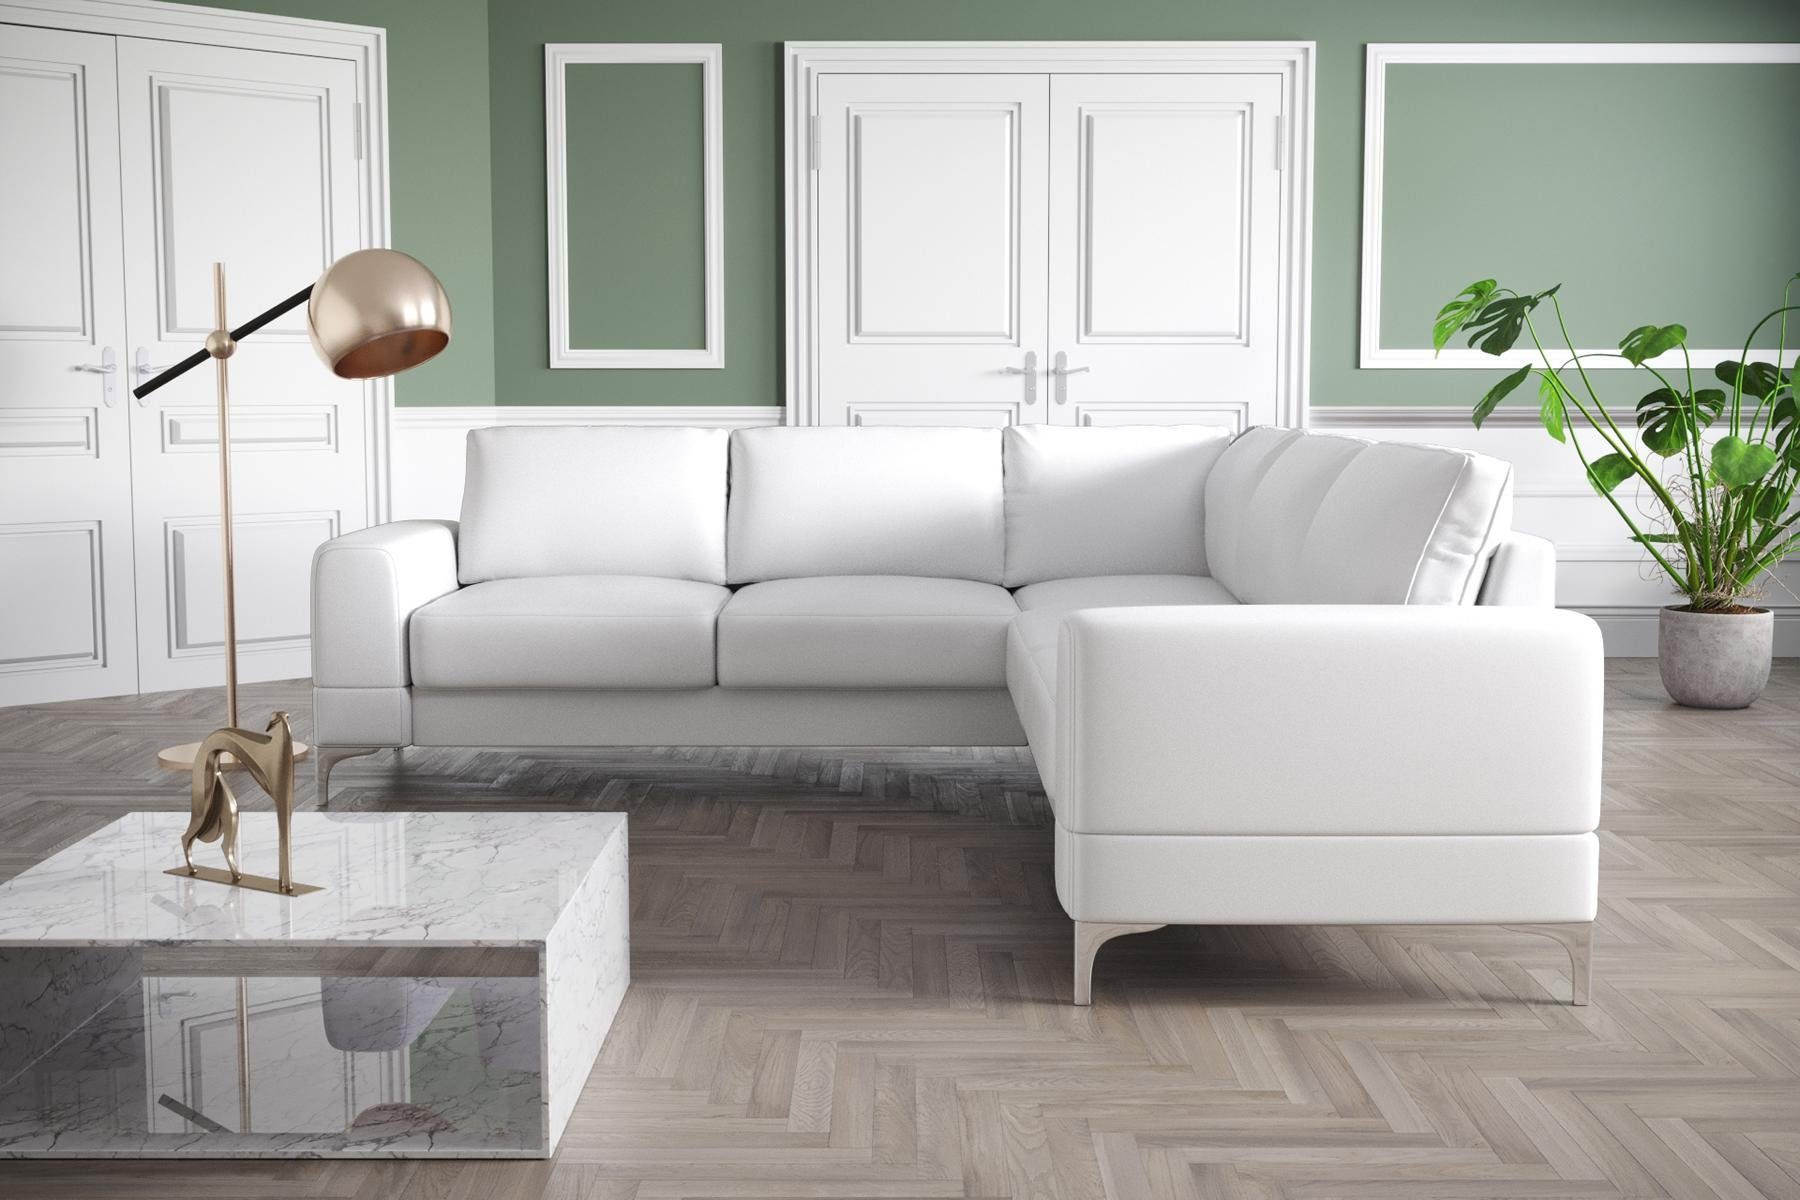 JVmoebel Ecksofa, Couch Ecksofa Textil Wohnzimmer Design Modern L-Form Türkis Möbel Weiß